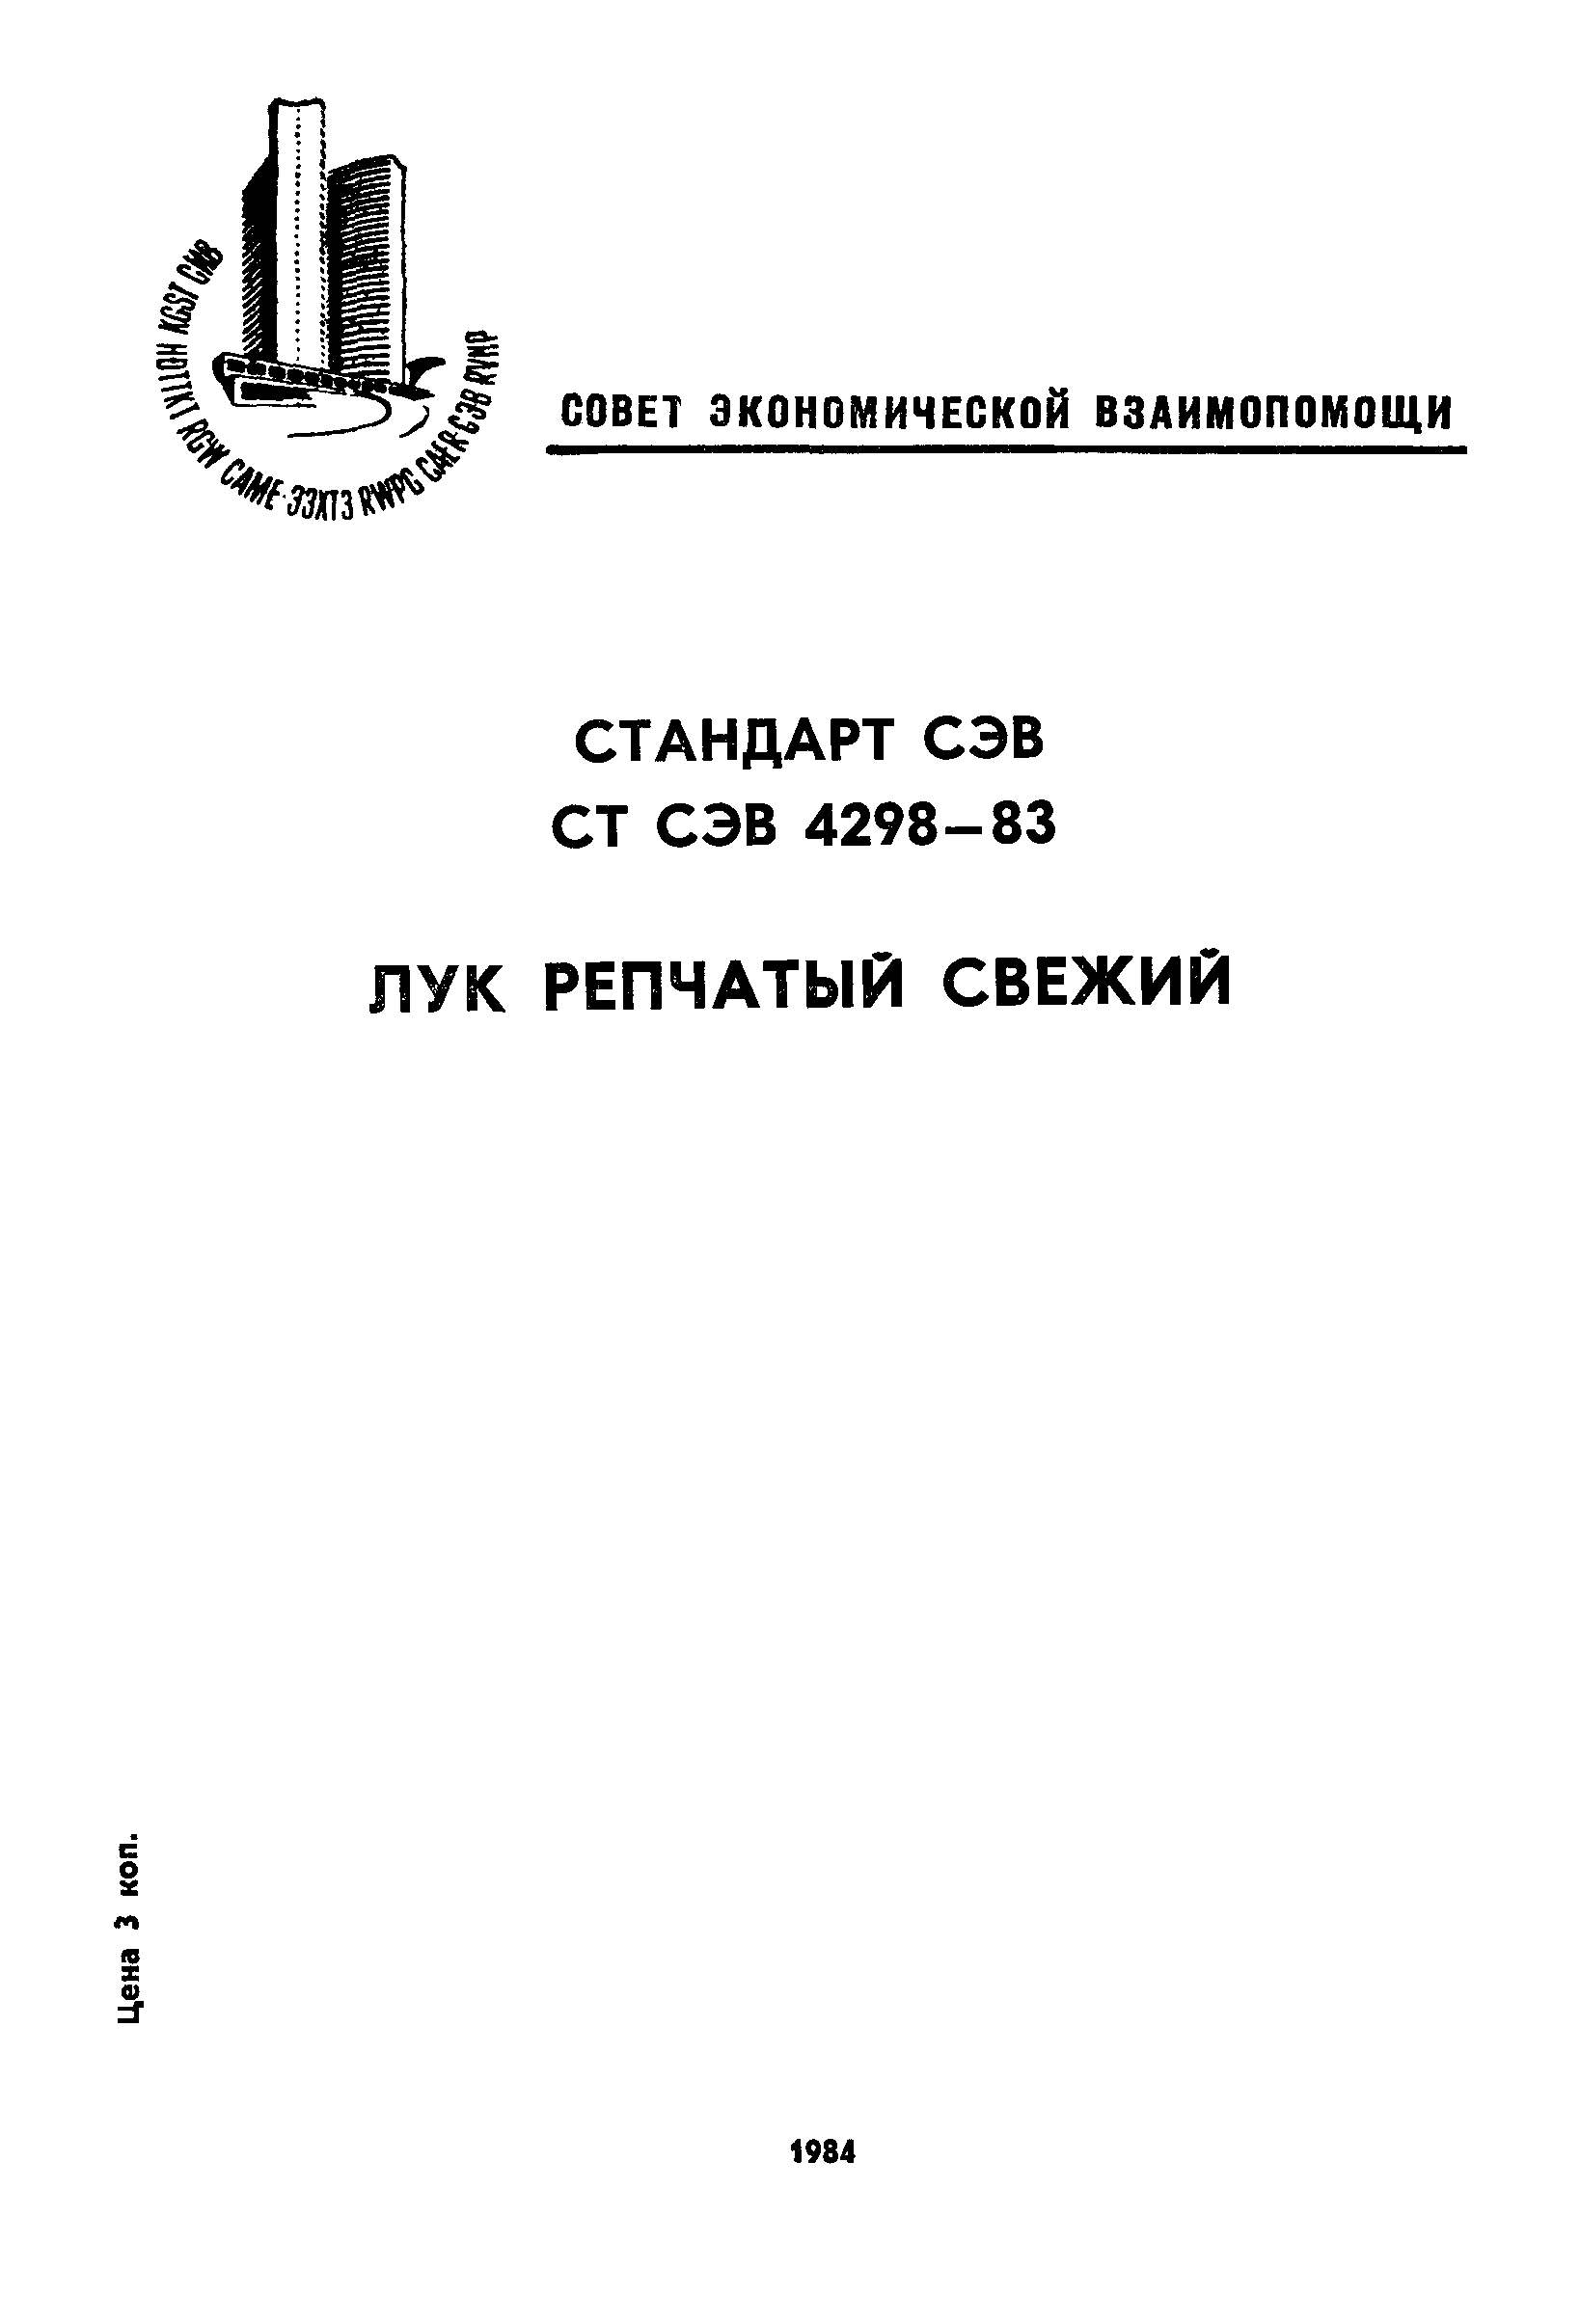 СТ СЭВ 4298-83